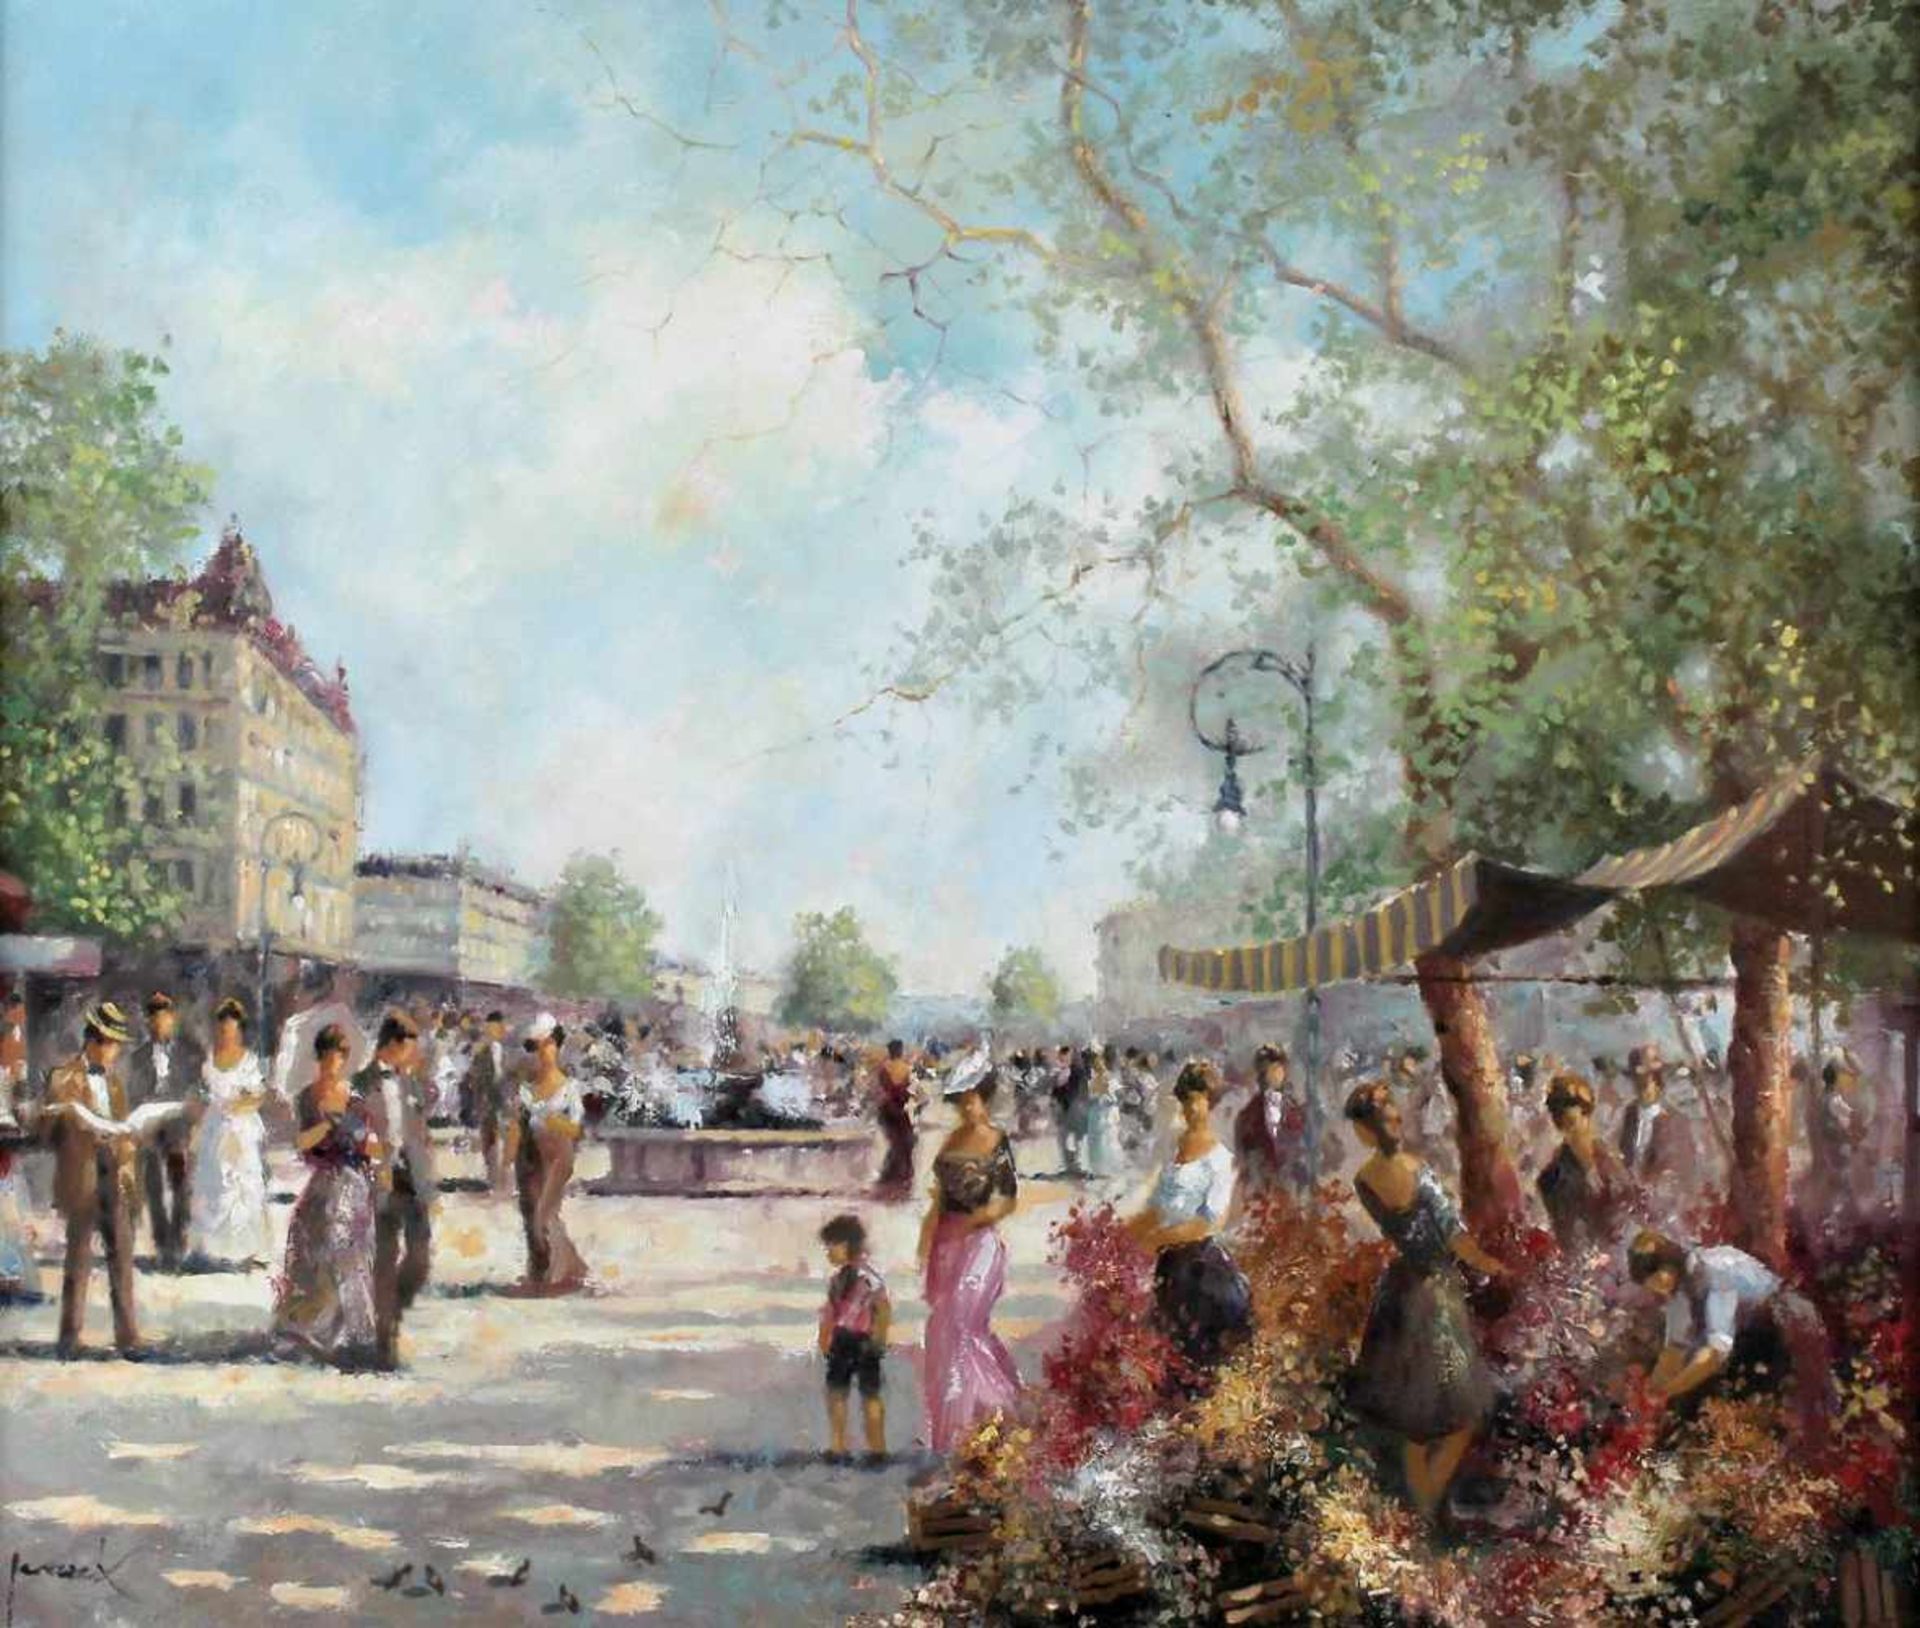 Jereczek, Christian(1935 Berlin). Blumenmarkt. Öl auf Leinwand zweite Hälfte 20. Jh. Ca. 58,8 x 68,8